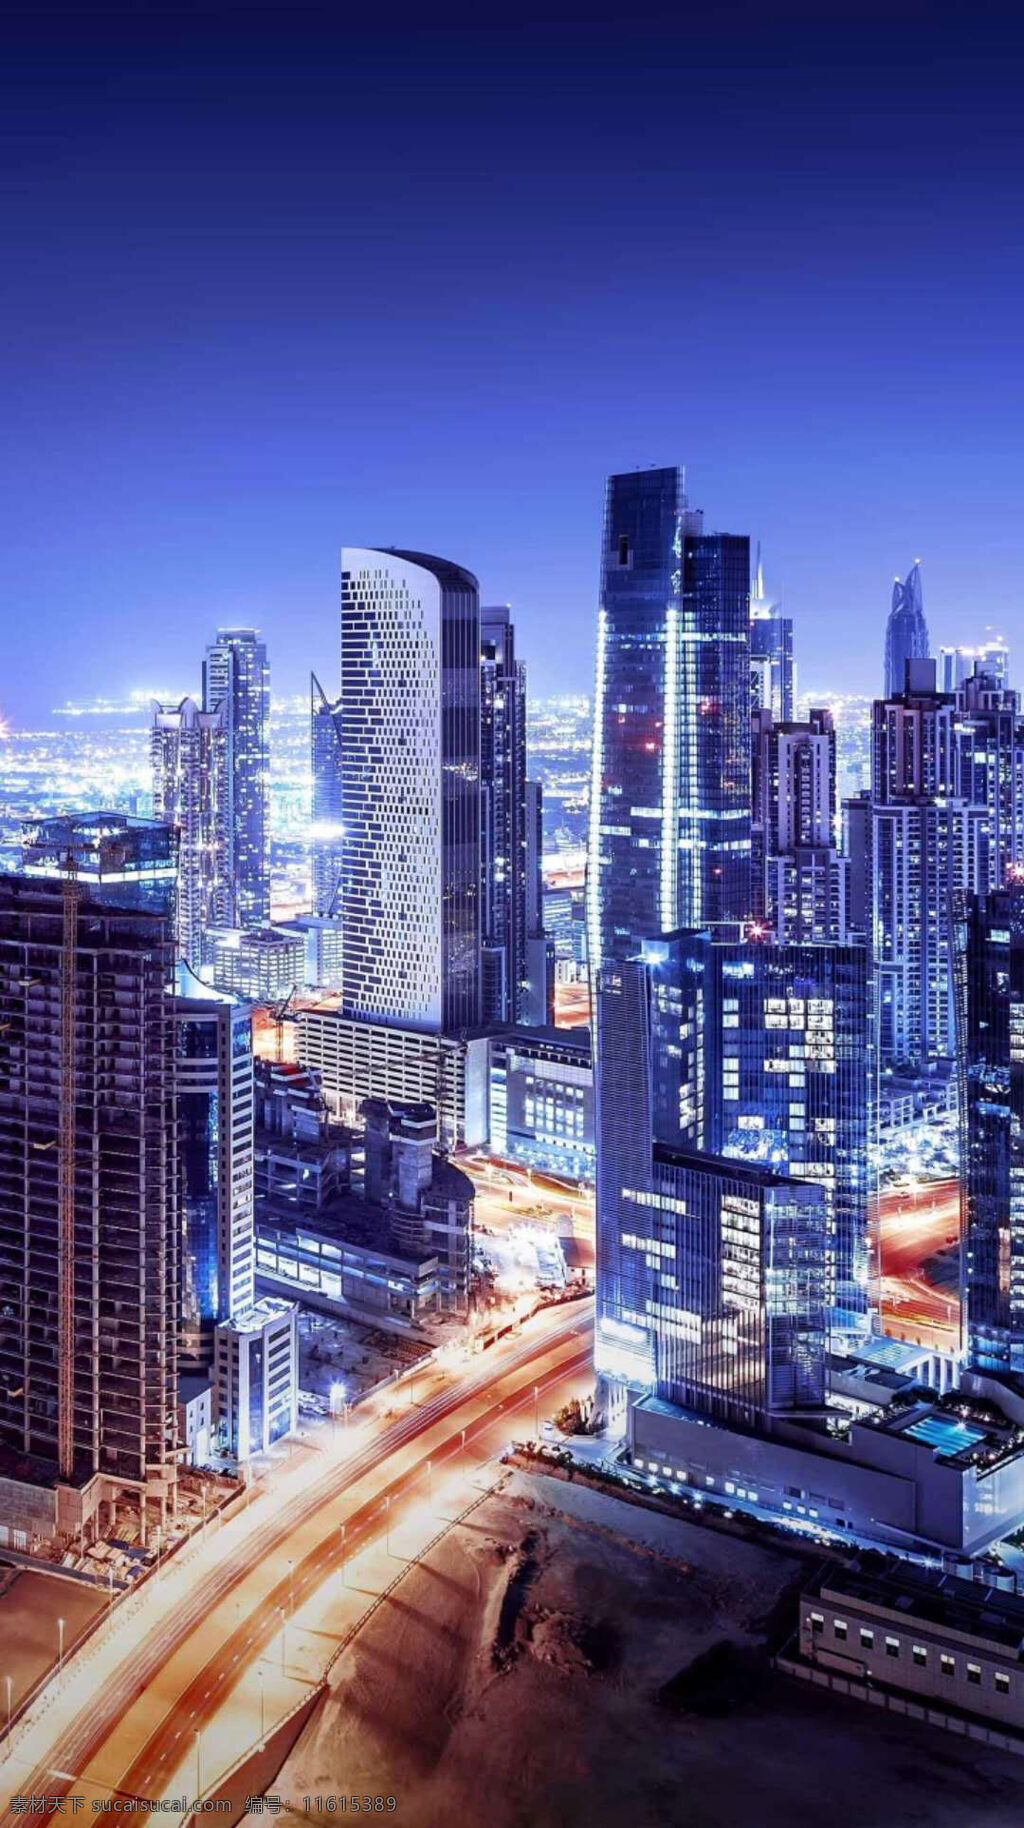 繁花 城市 夜景 高楼大厦 灯光璀璨 富裕的城市 迪拜建筑 迪拜旅游 外国城市 旅游摄影 国外旅游